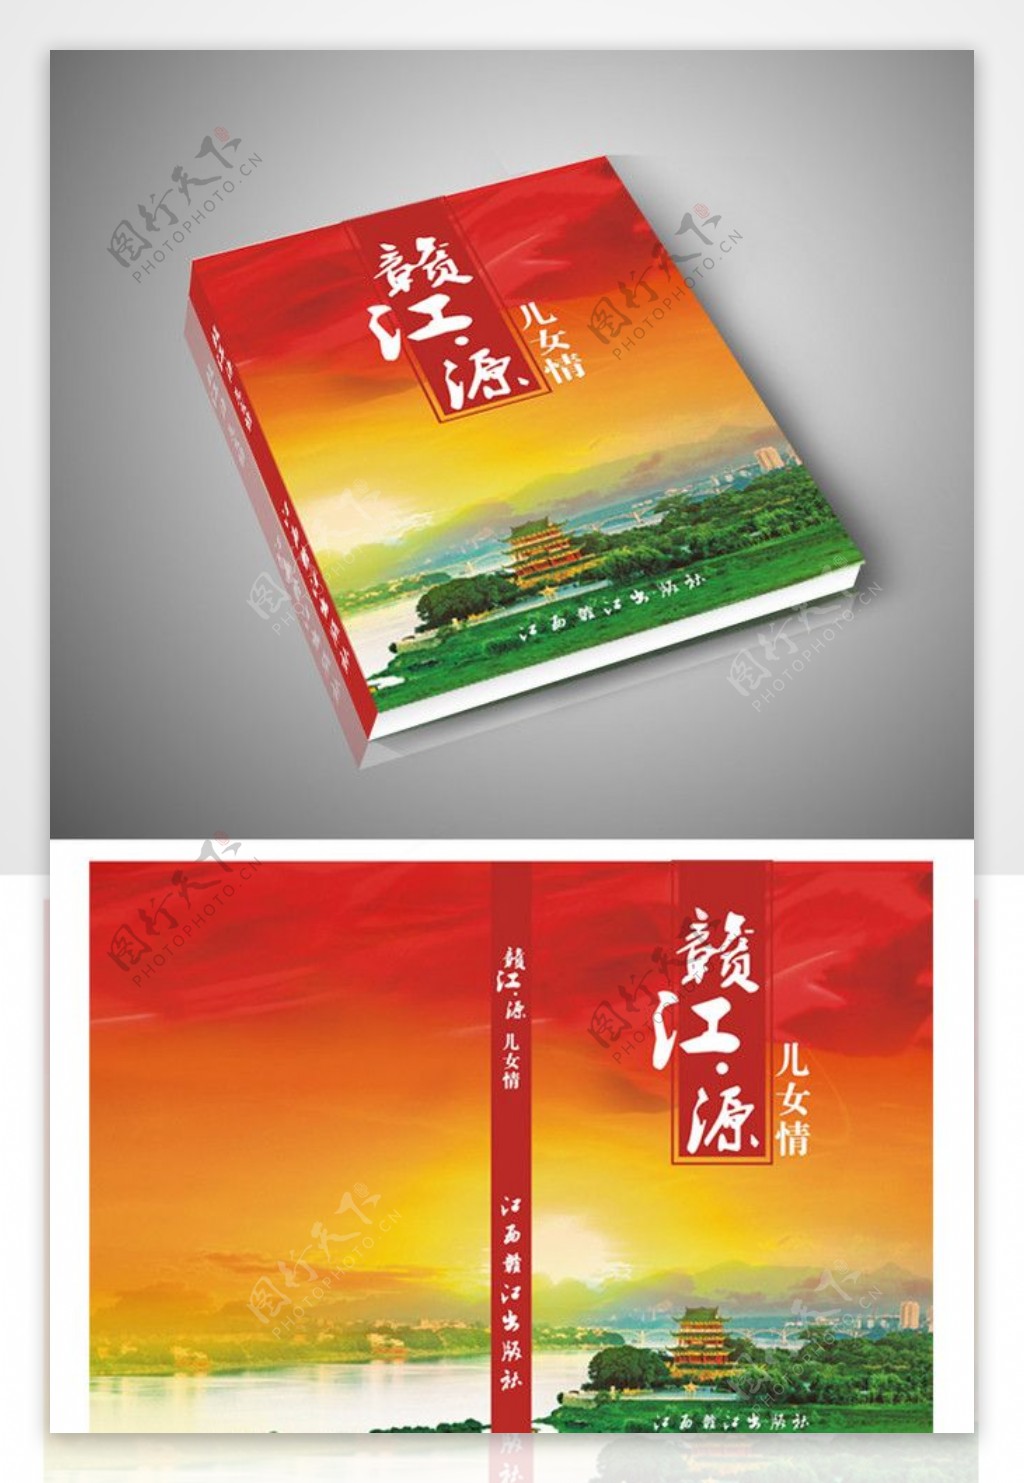 赣州八镜台书籍封面图片